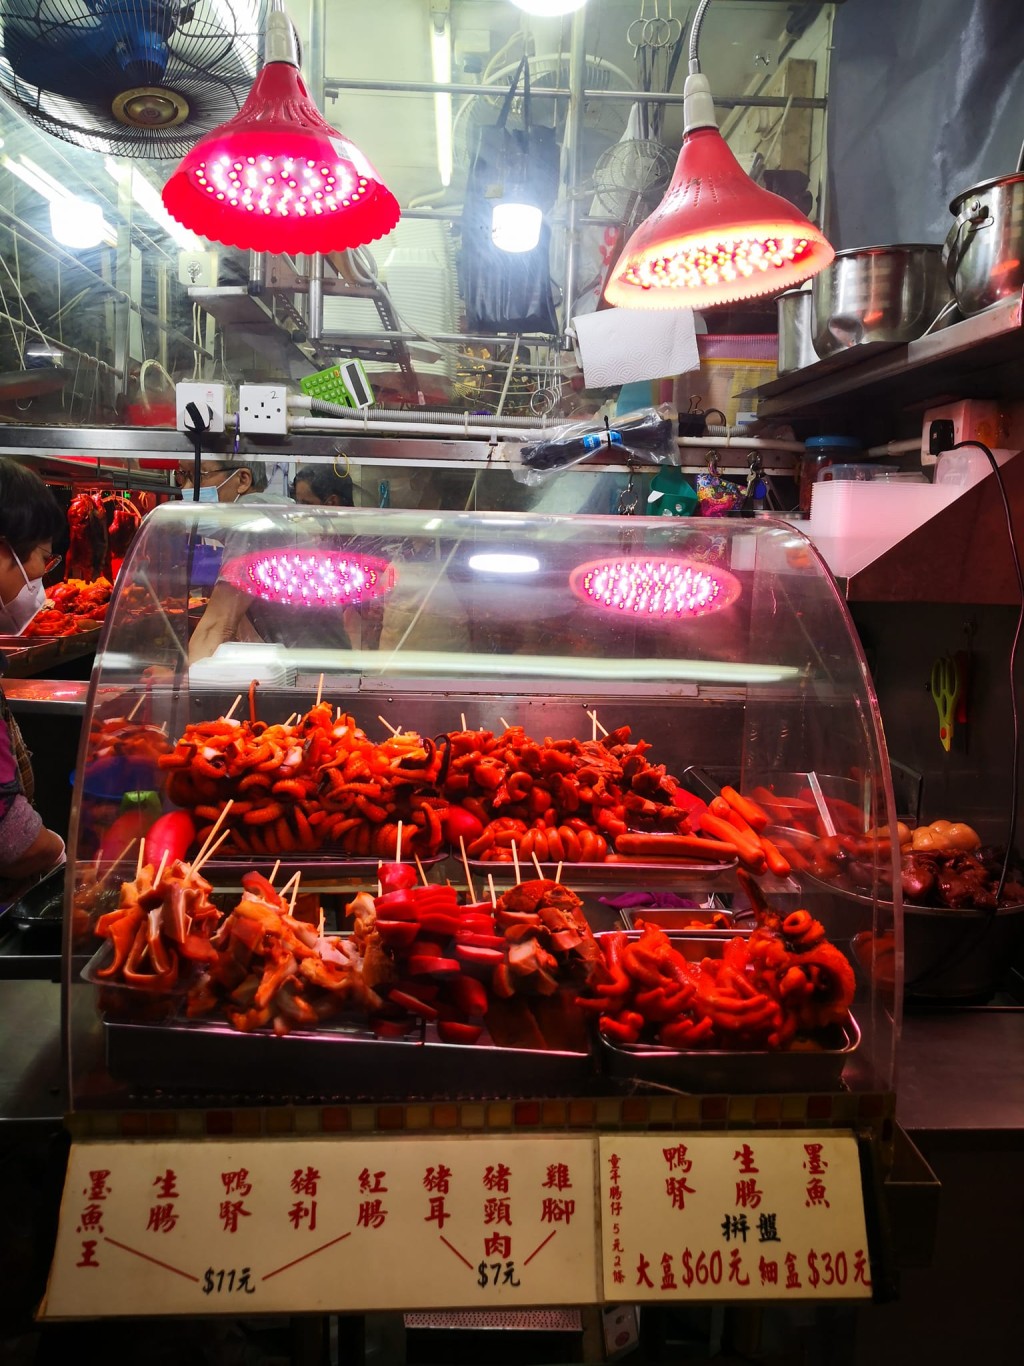 位於九龍灣宏光樓的港式滷味小店名為「鴻運」